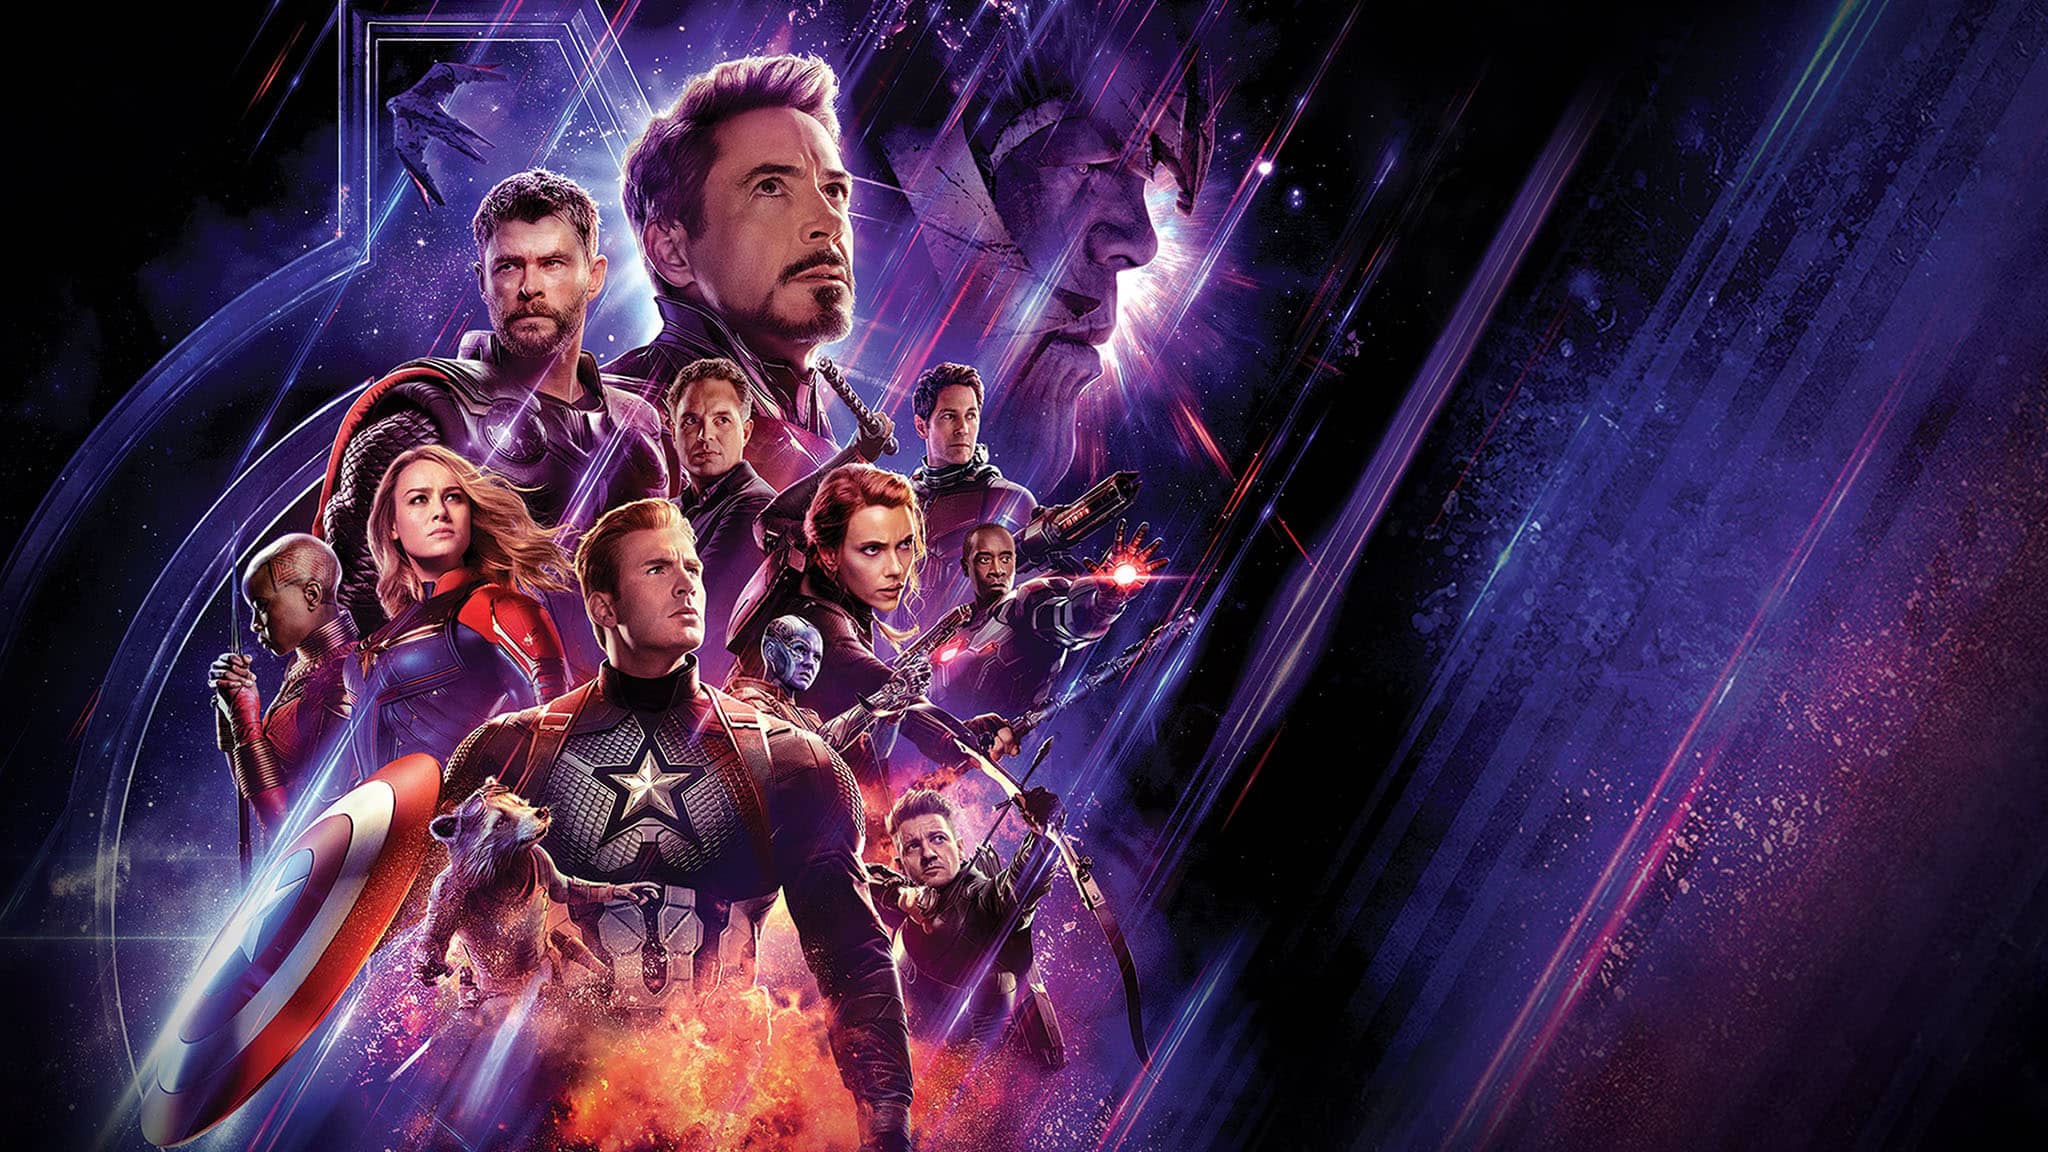 فيلم Avengers: Endgame 2019 مترجم